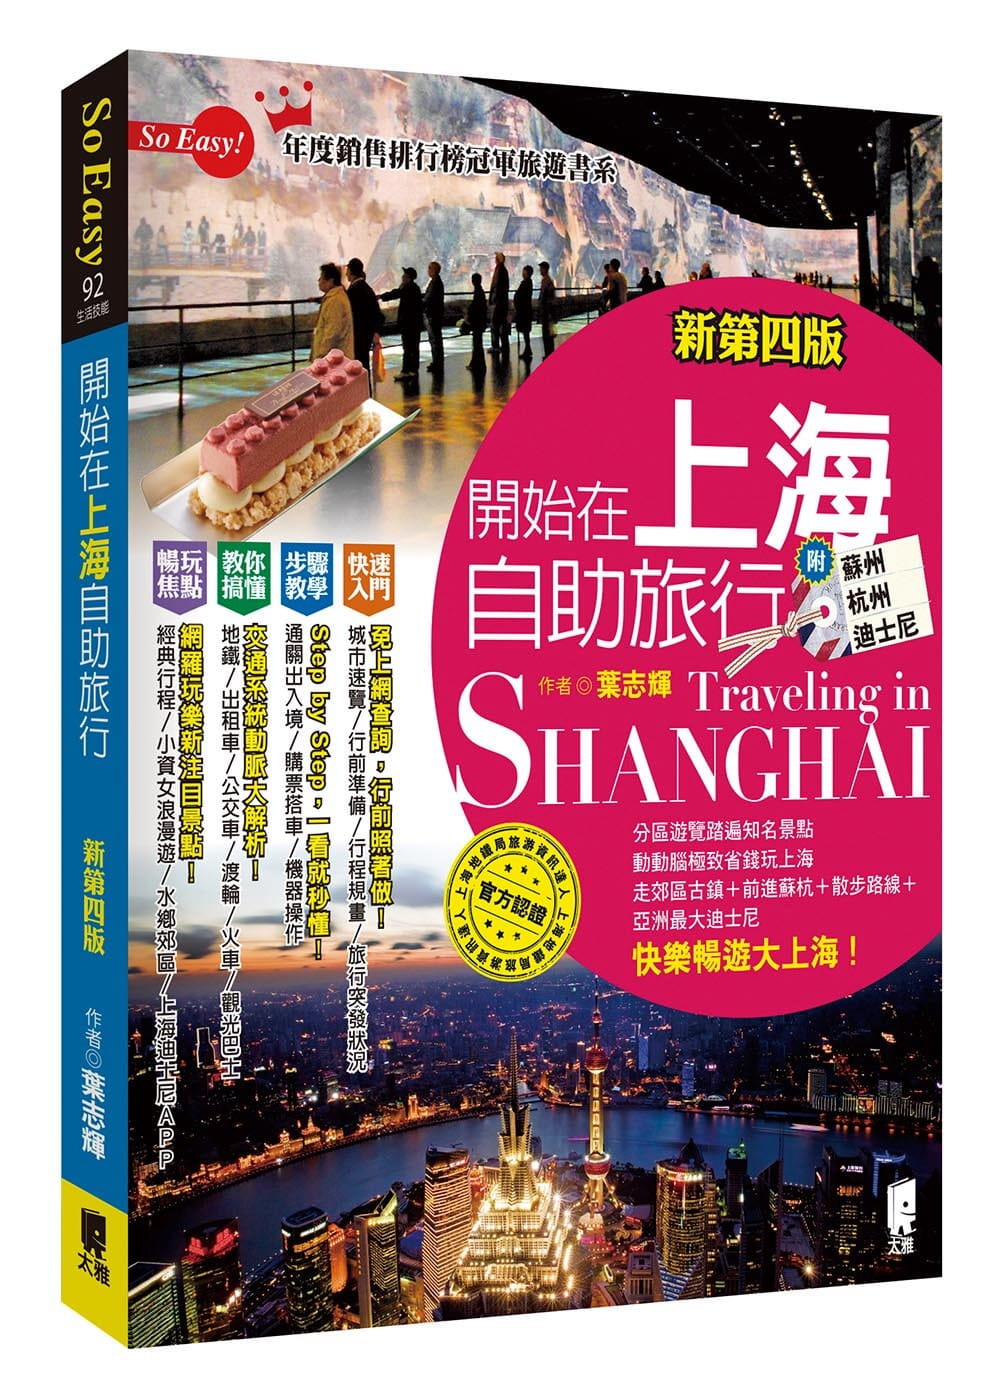 開始在上海自助旅行